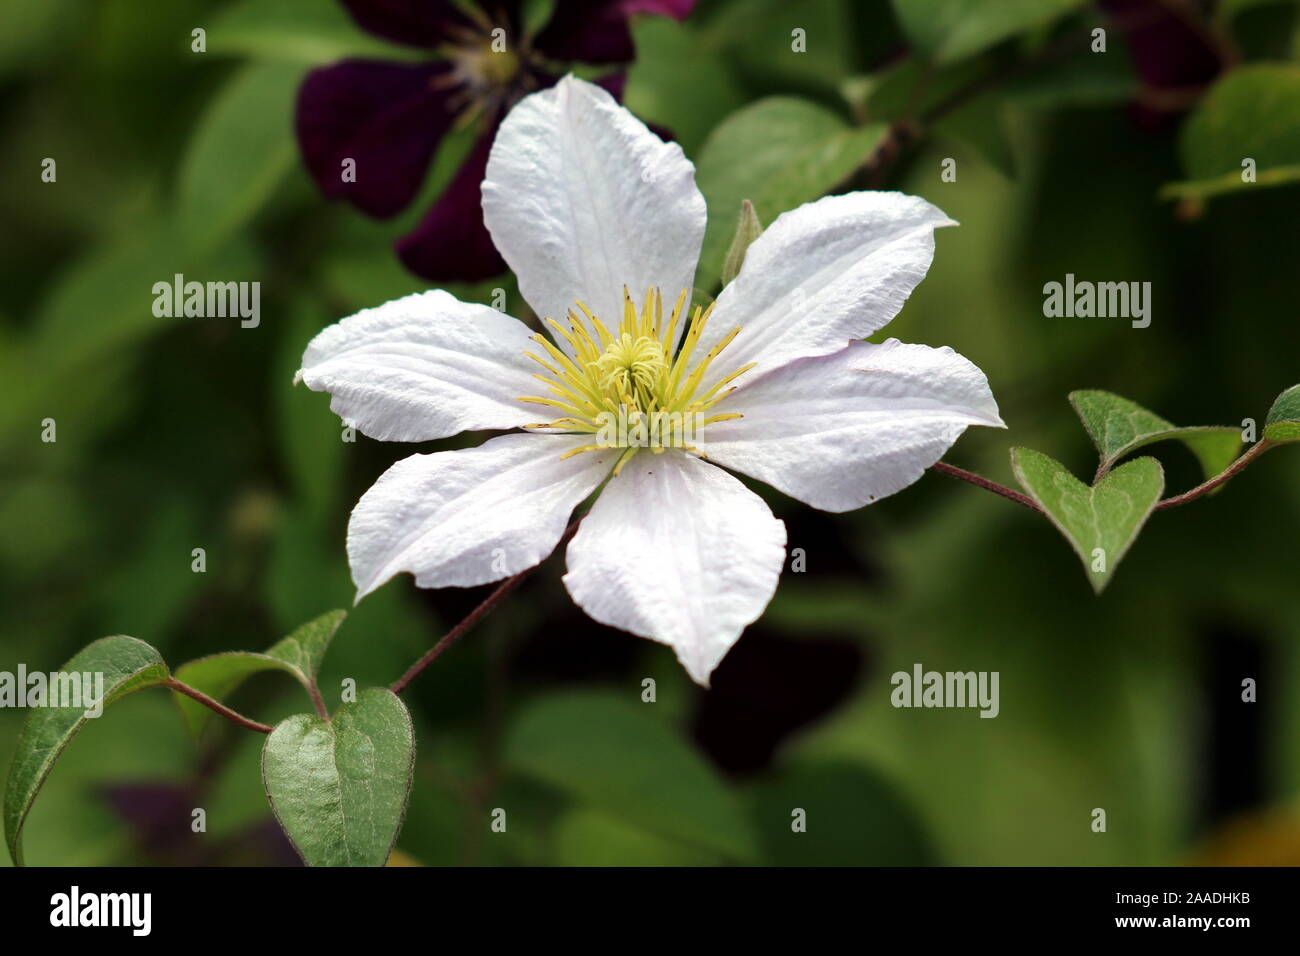 Fiore Bianco Con Centro Giallo Immagini E Fotos Stock Alamy